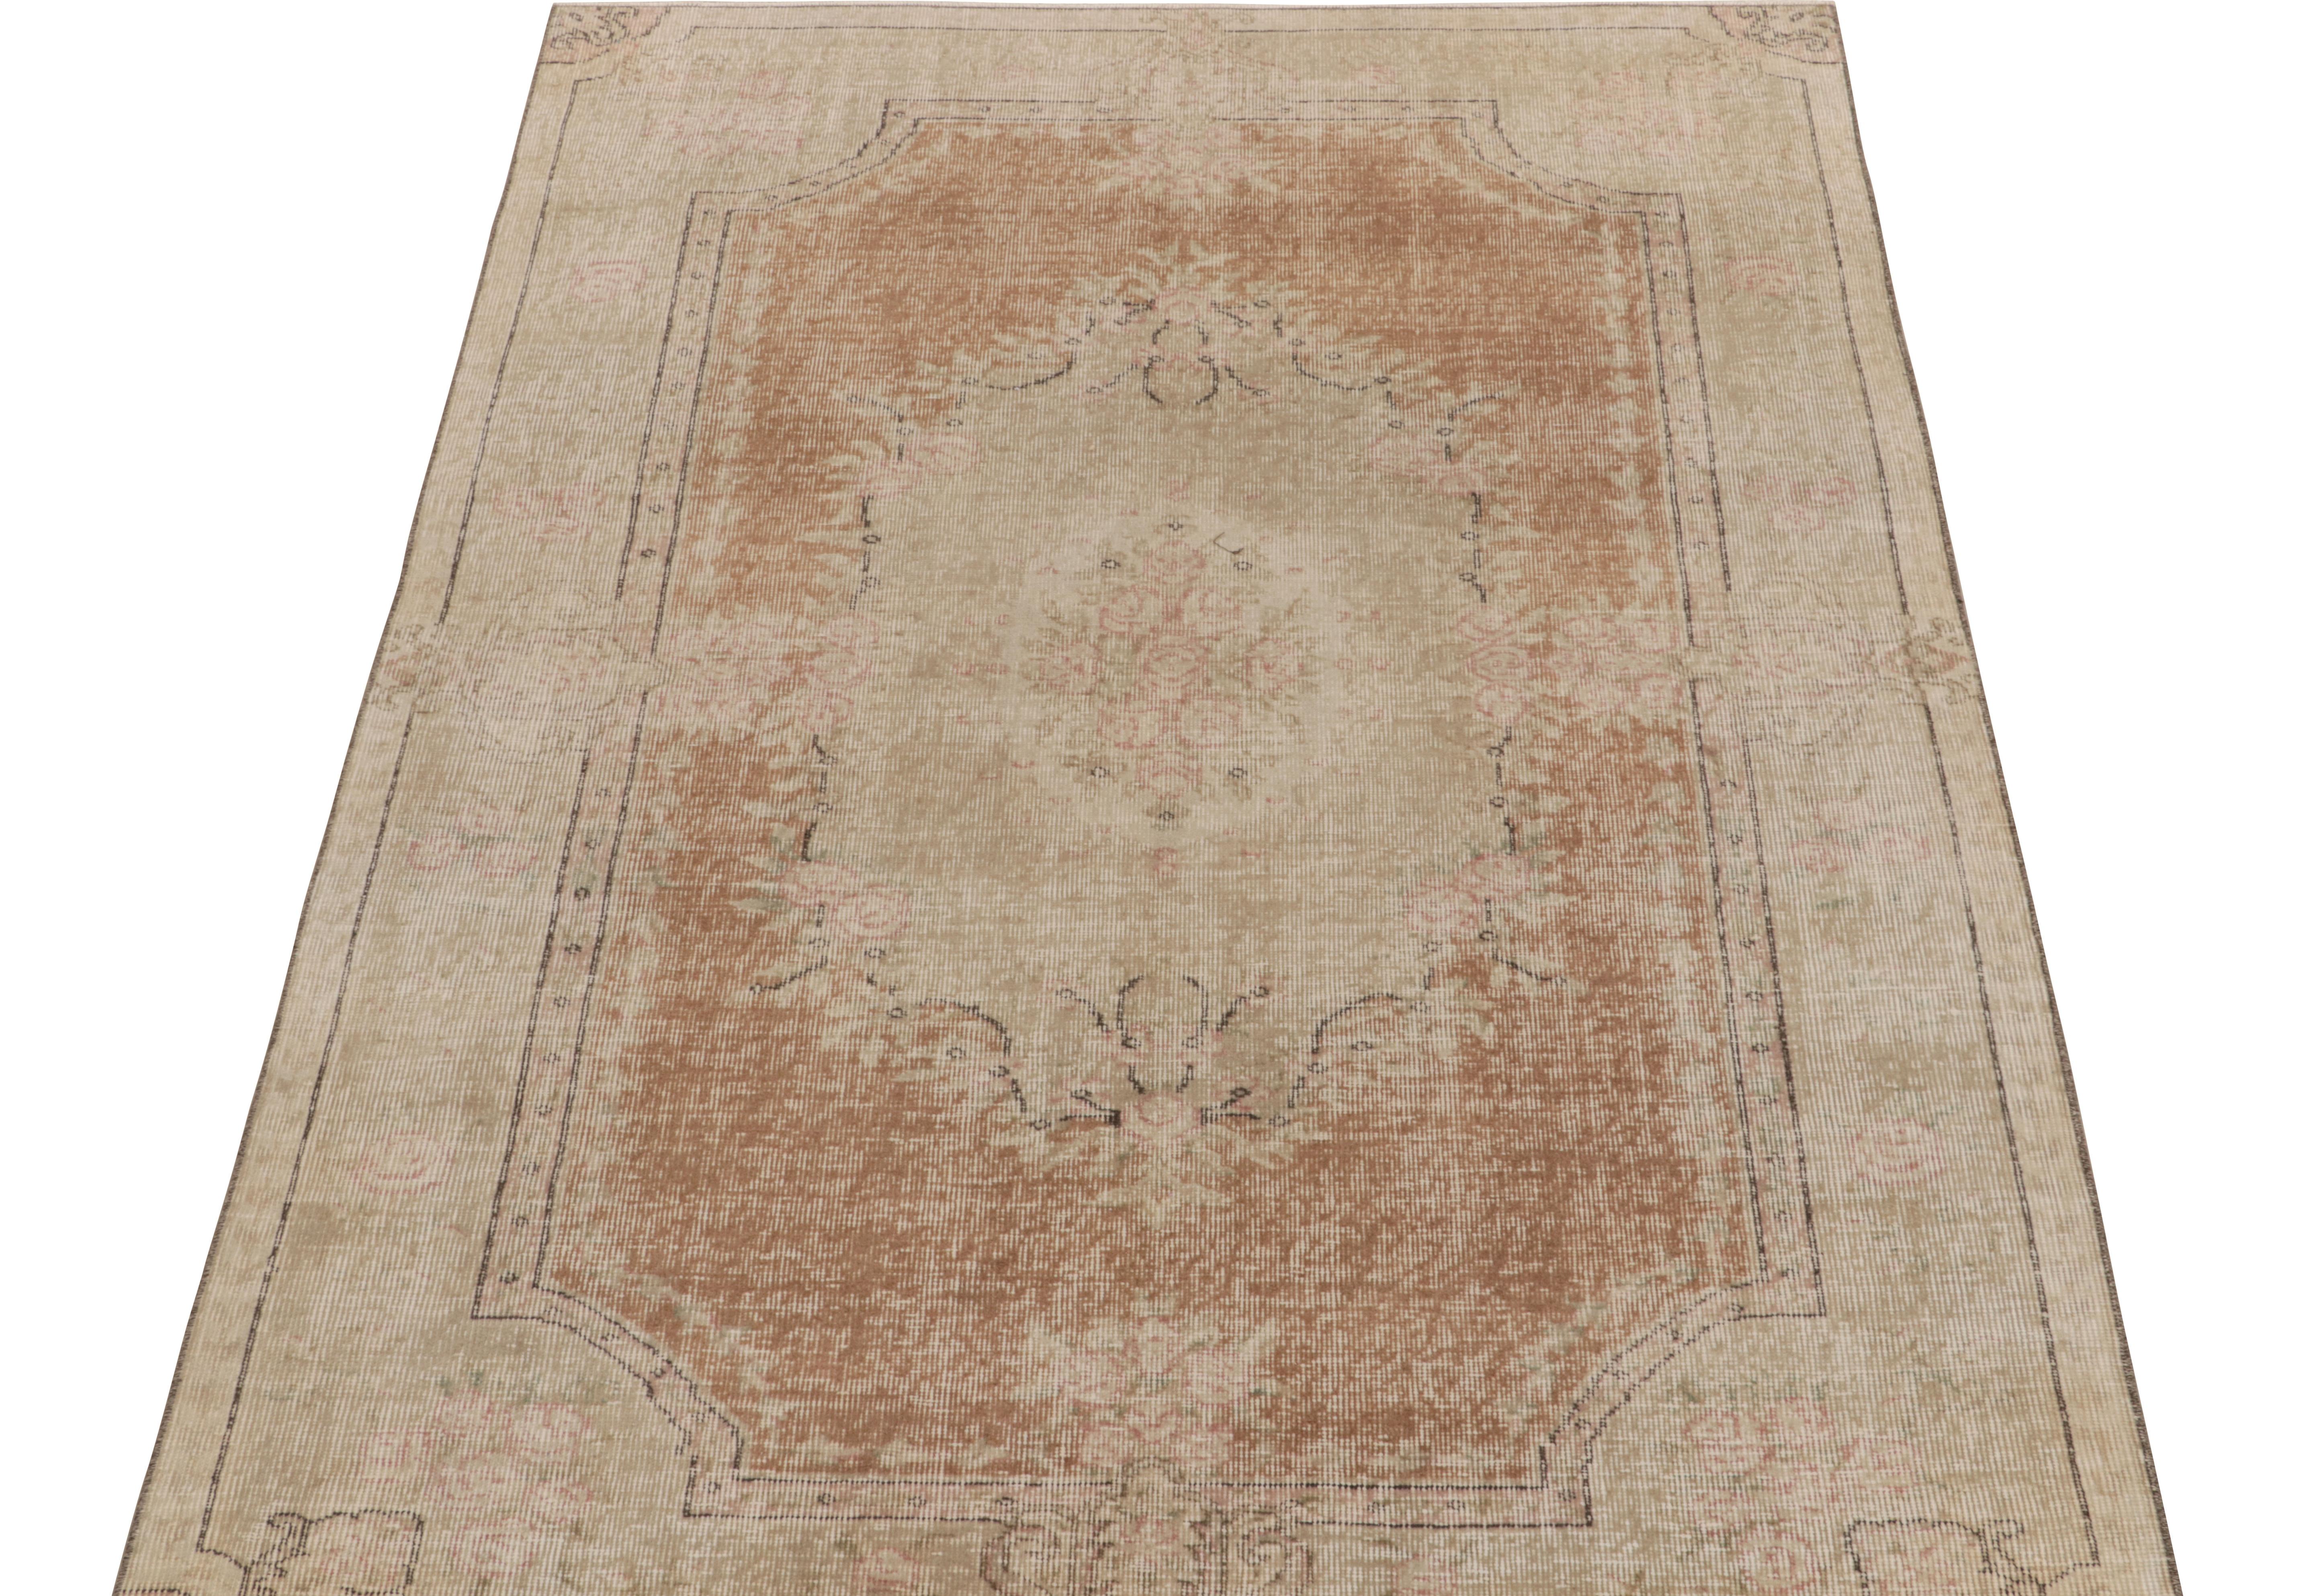 Noué à la main en laine, ce tapis vintage 5x8 d'un atelier turc innovant entre dans la collection commémorative Mid-Century Pasha de Rug & Kilim. 

Cette pièce séduisante occupe une place de choix parmi les œuvres de l'artiste d'inspiration